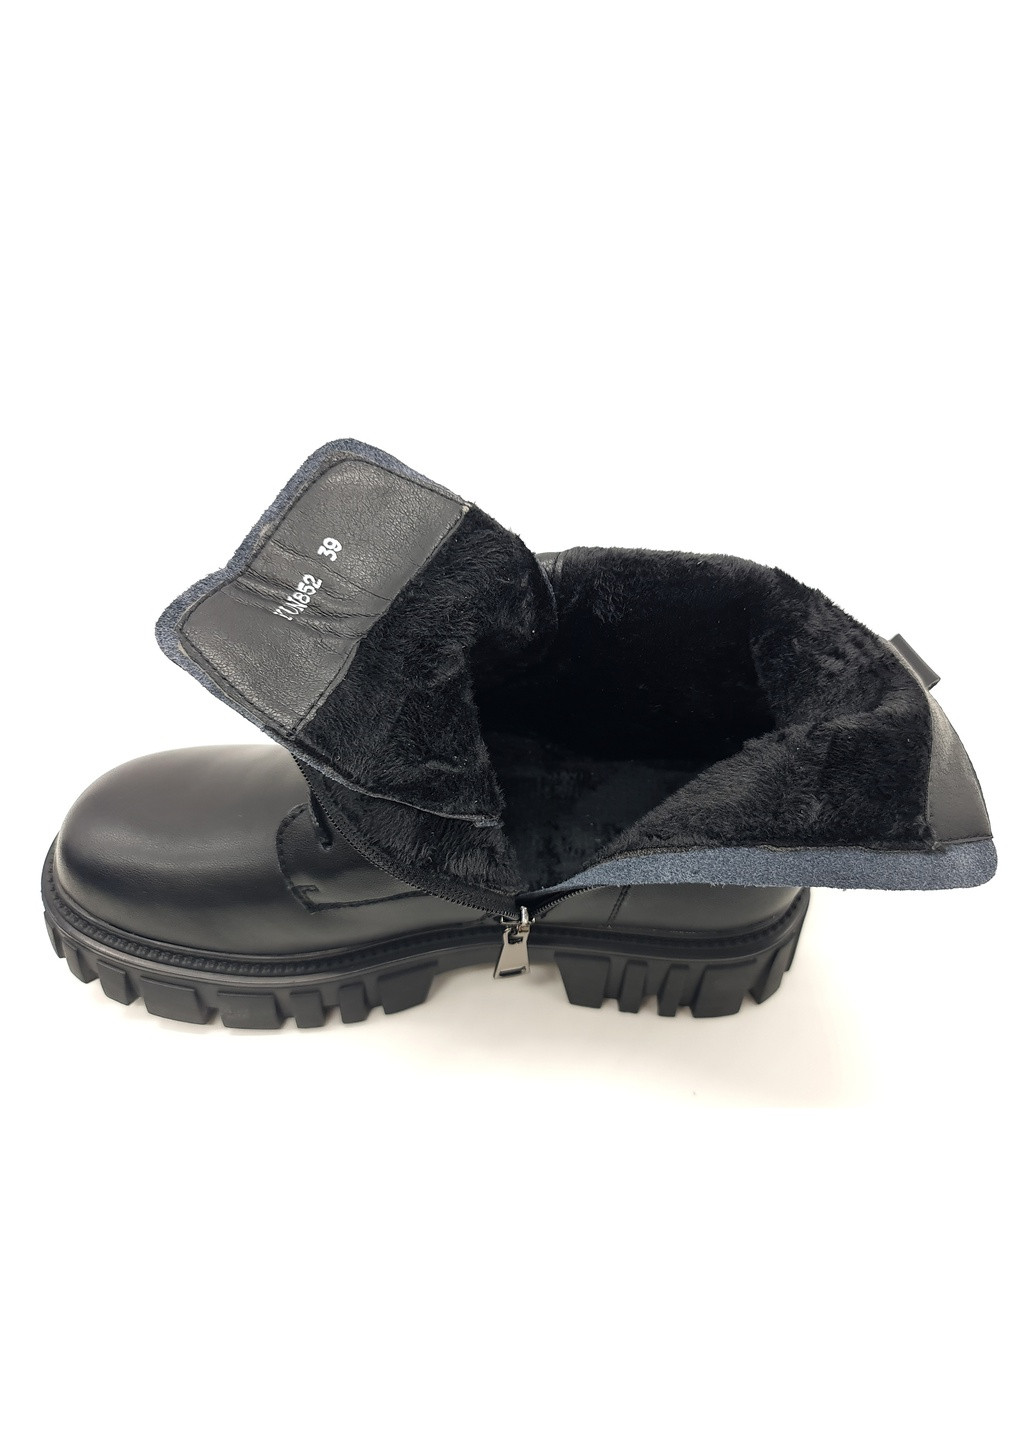 Осенние женские ботинки черные кожаные ya-12-3 23 см (р) Yalasou